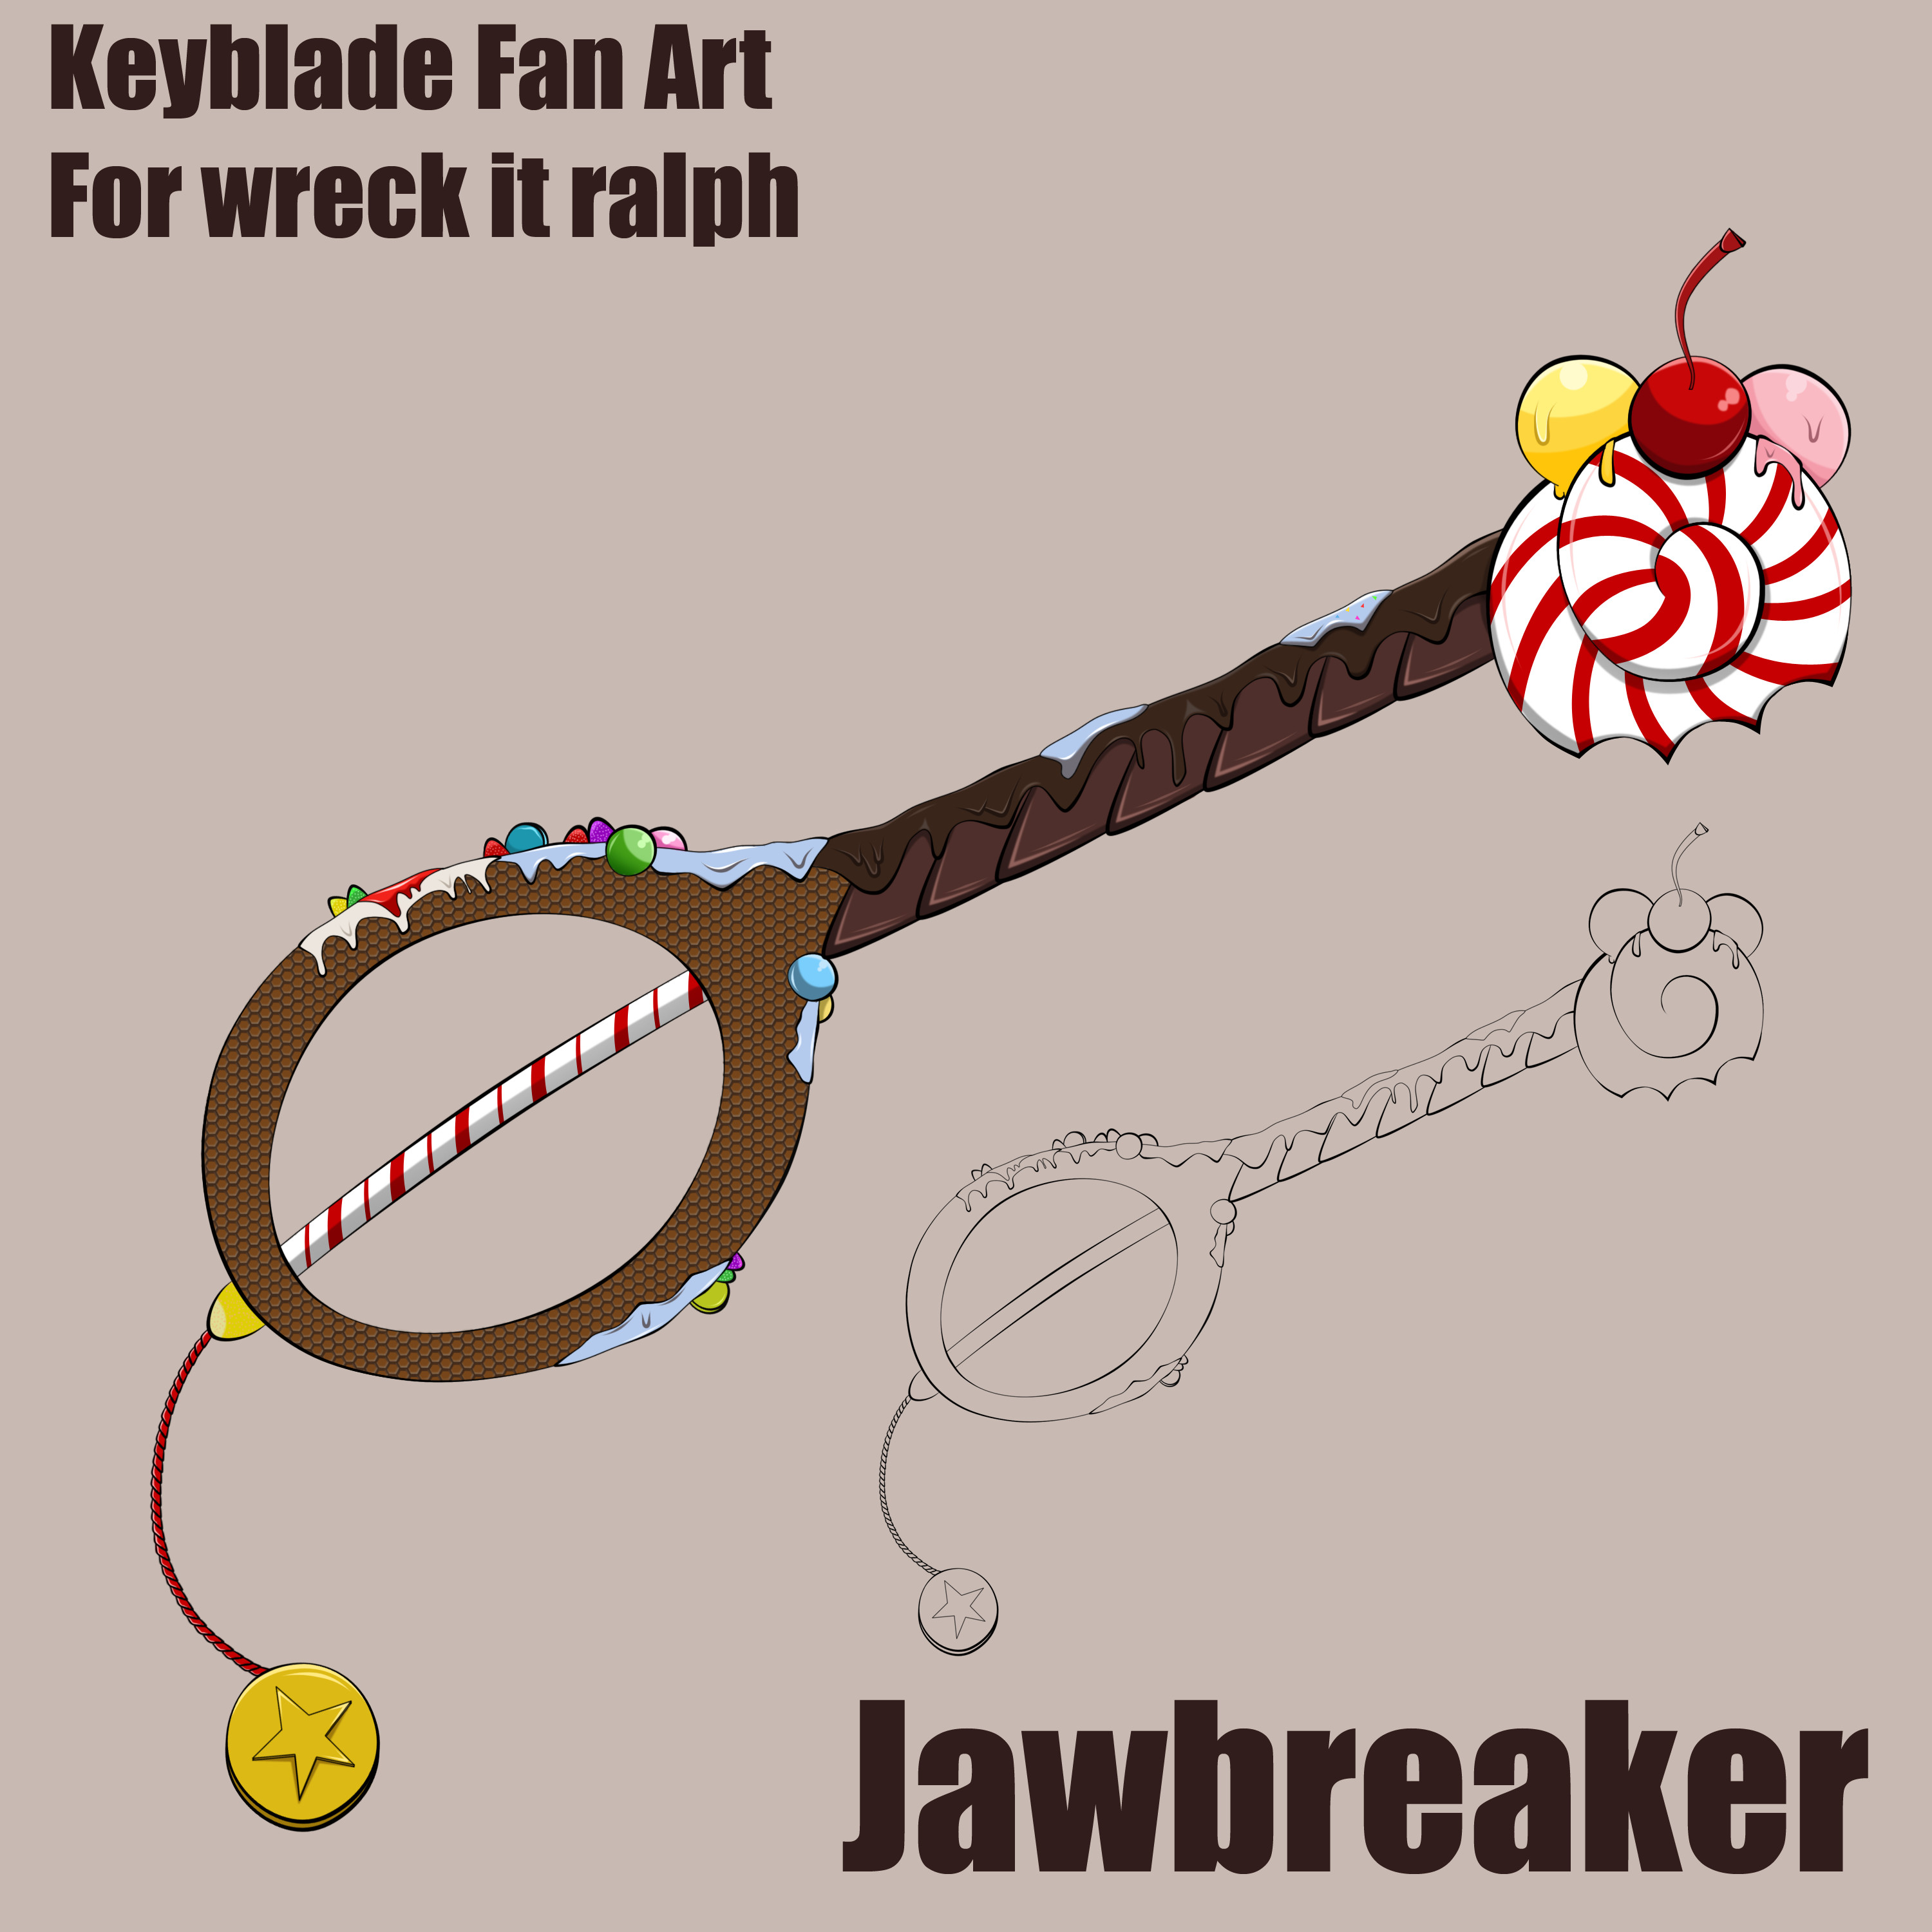 keyblade__jawbreaker_by_vaikingu-dbdd0lv